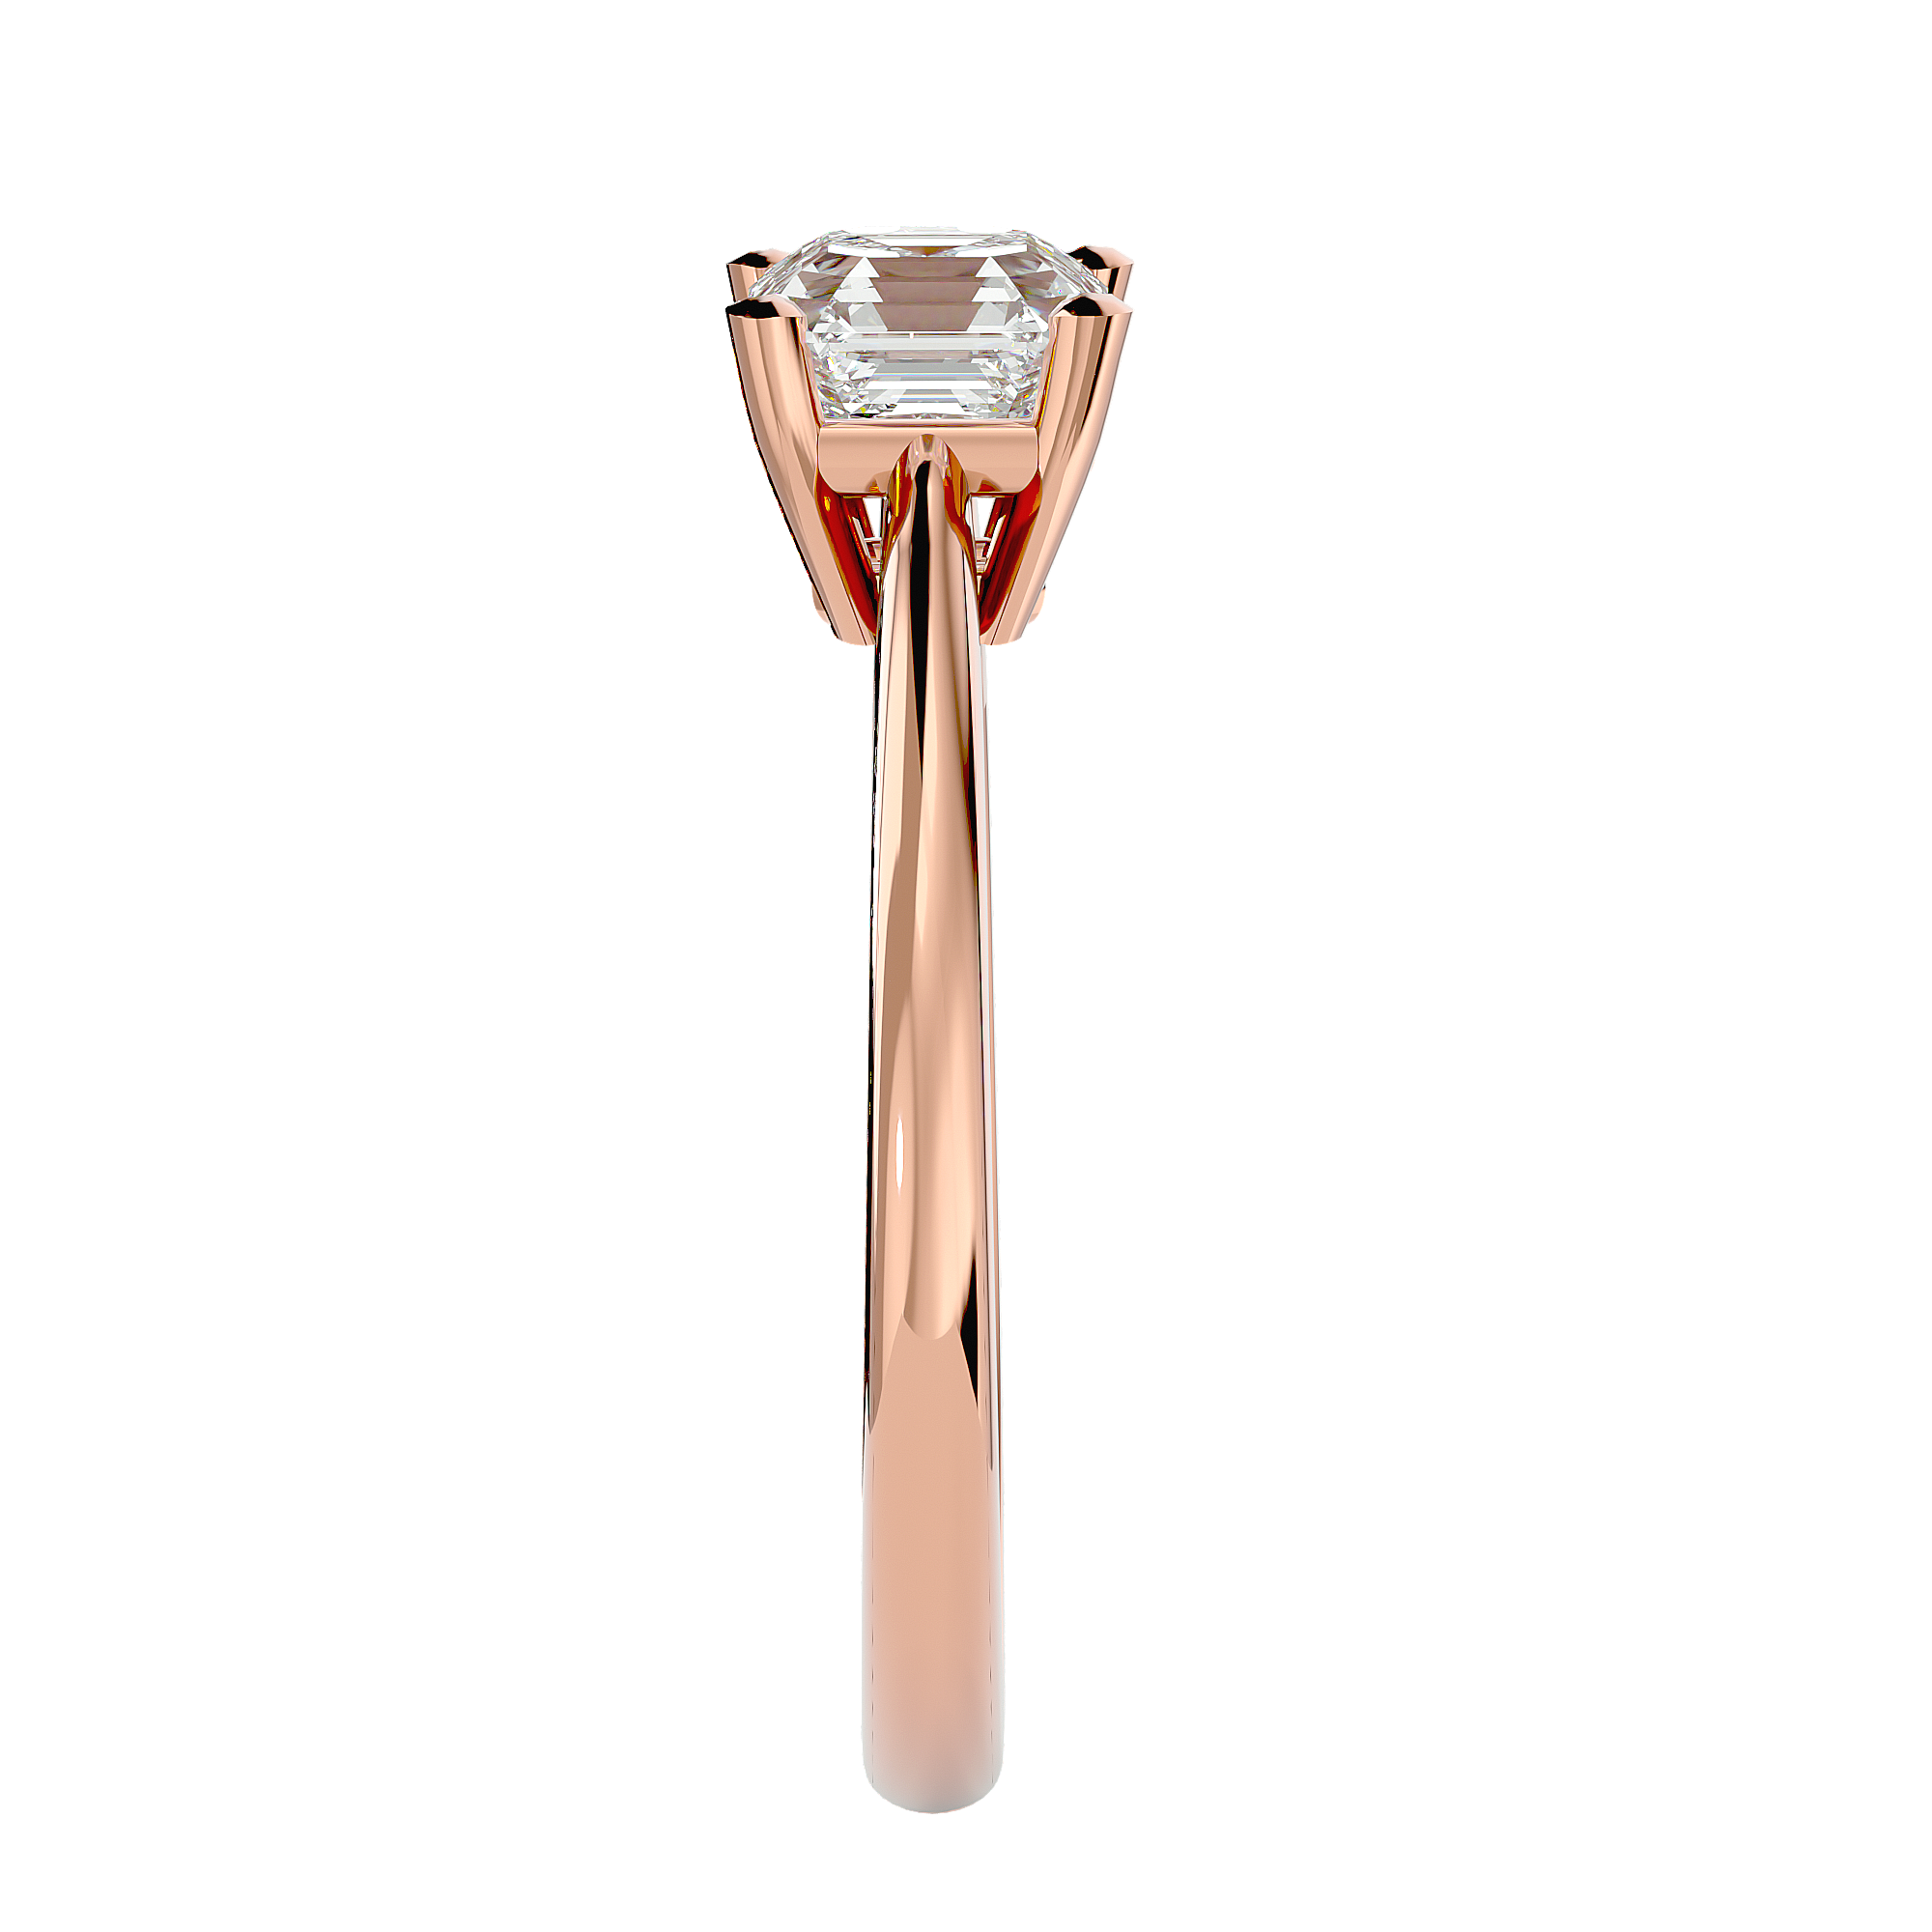 The Classic Asscher Cut Diamond  Engagement Ring